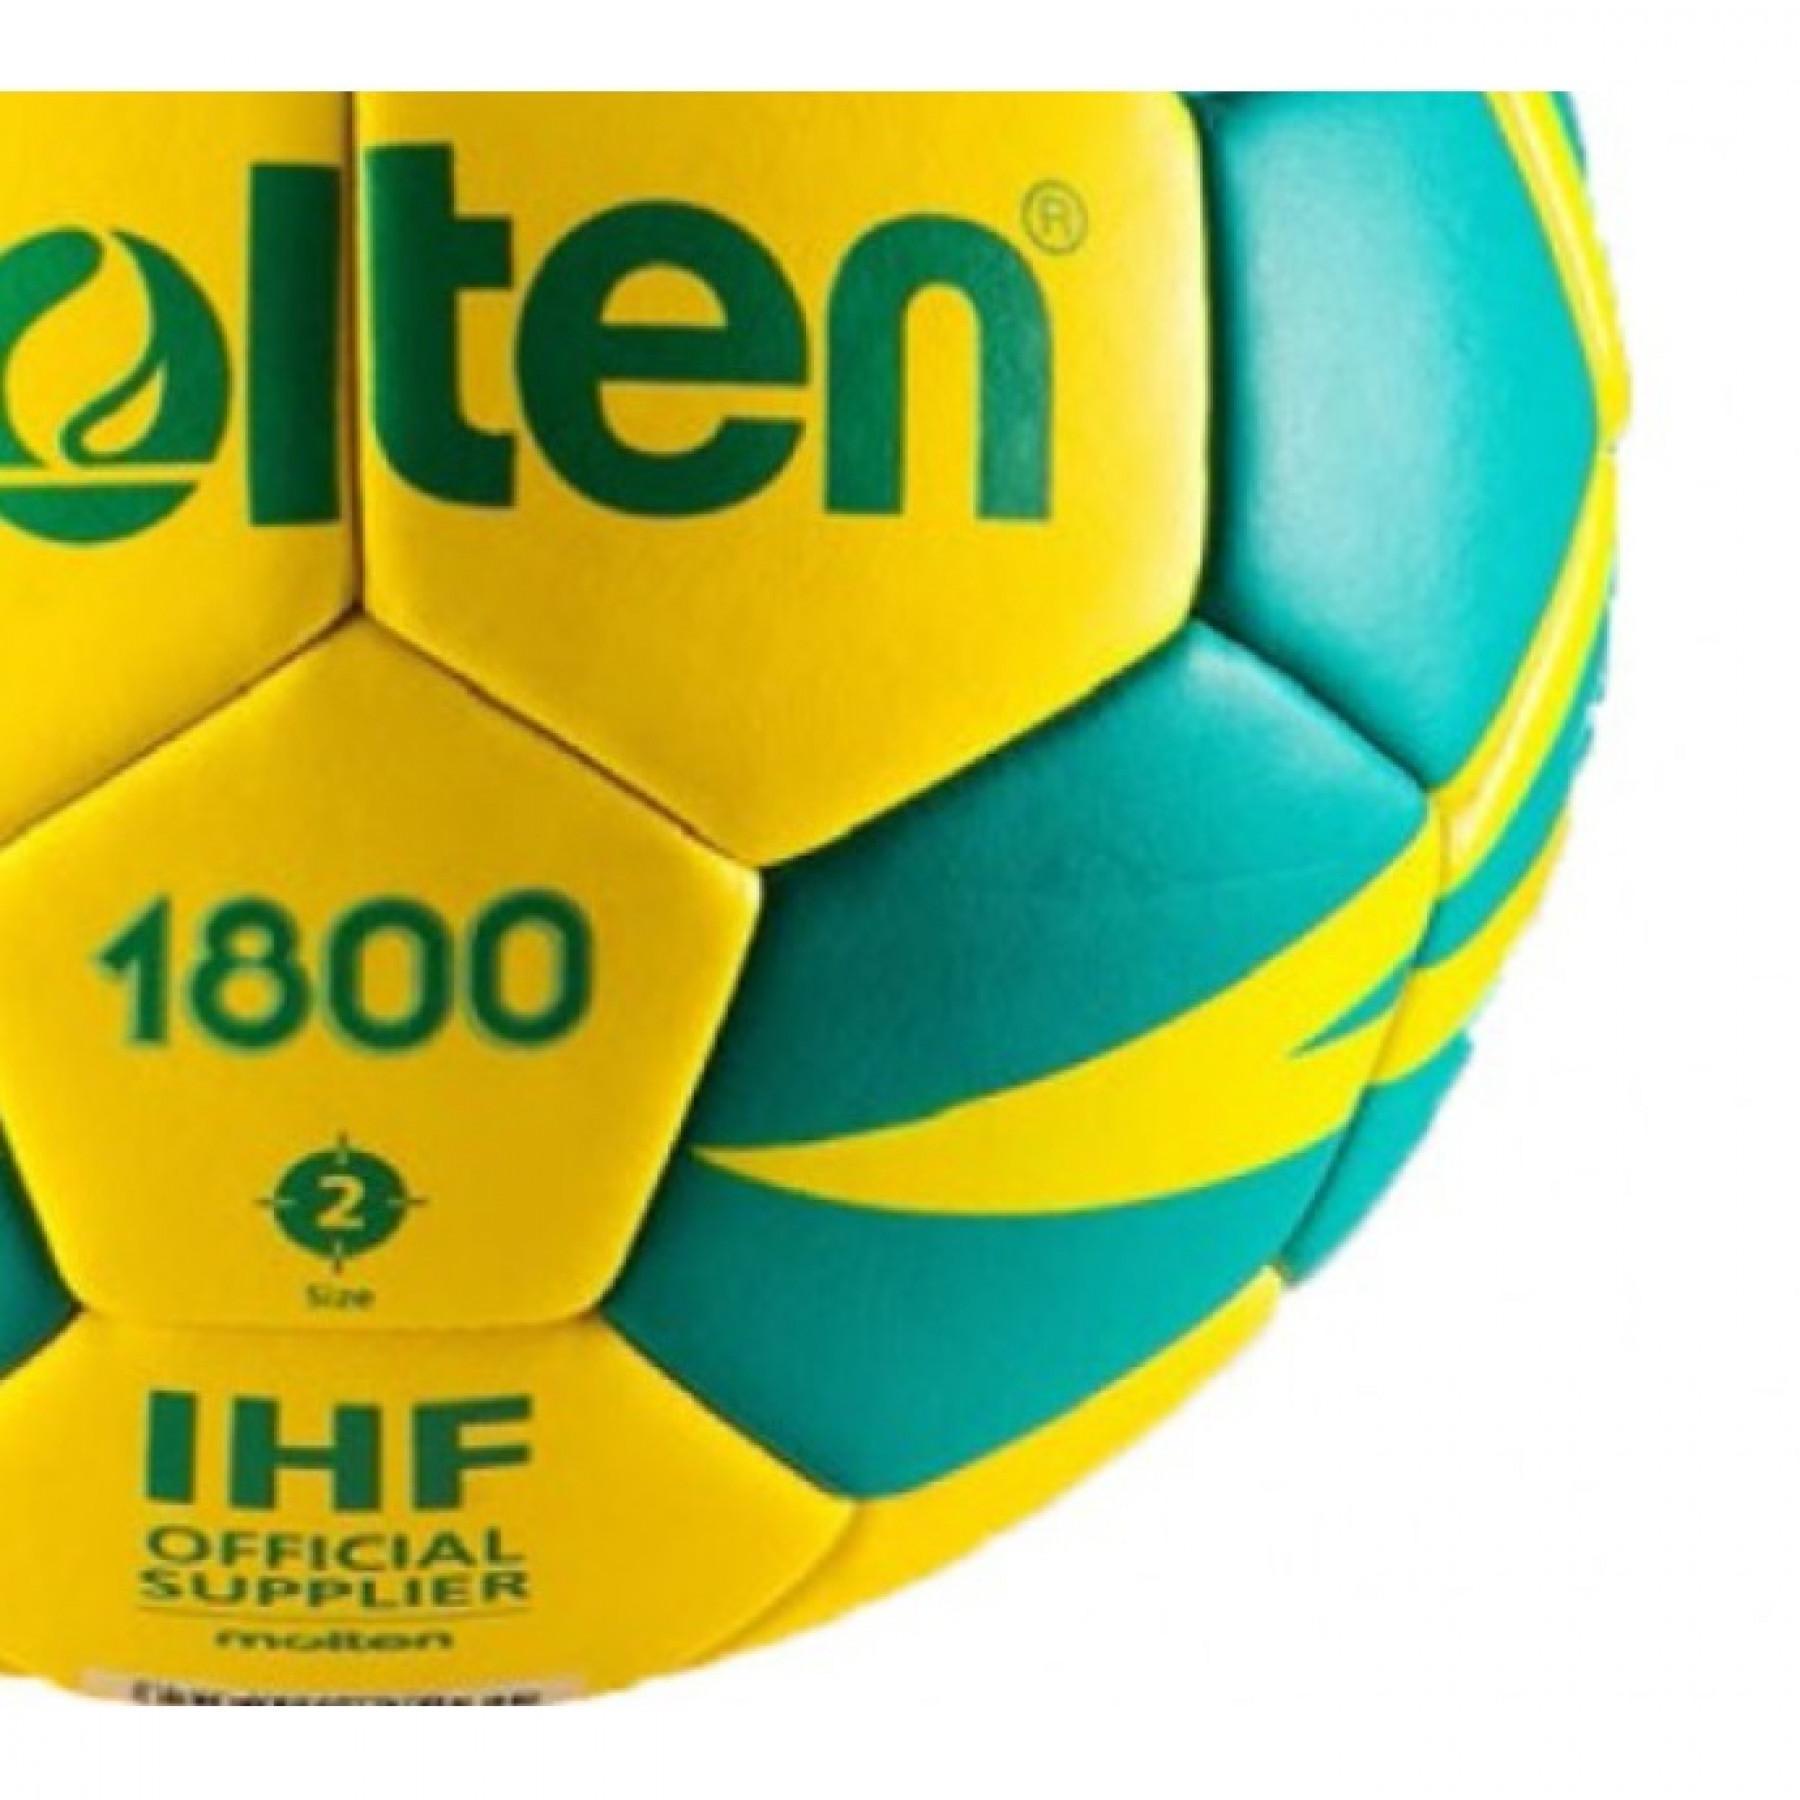 Trainingsbal Molten HX1800 (Taille 1)